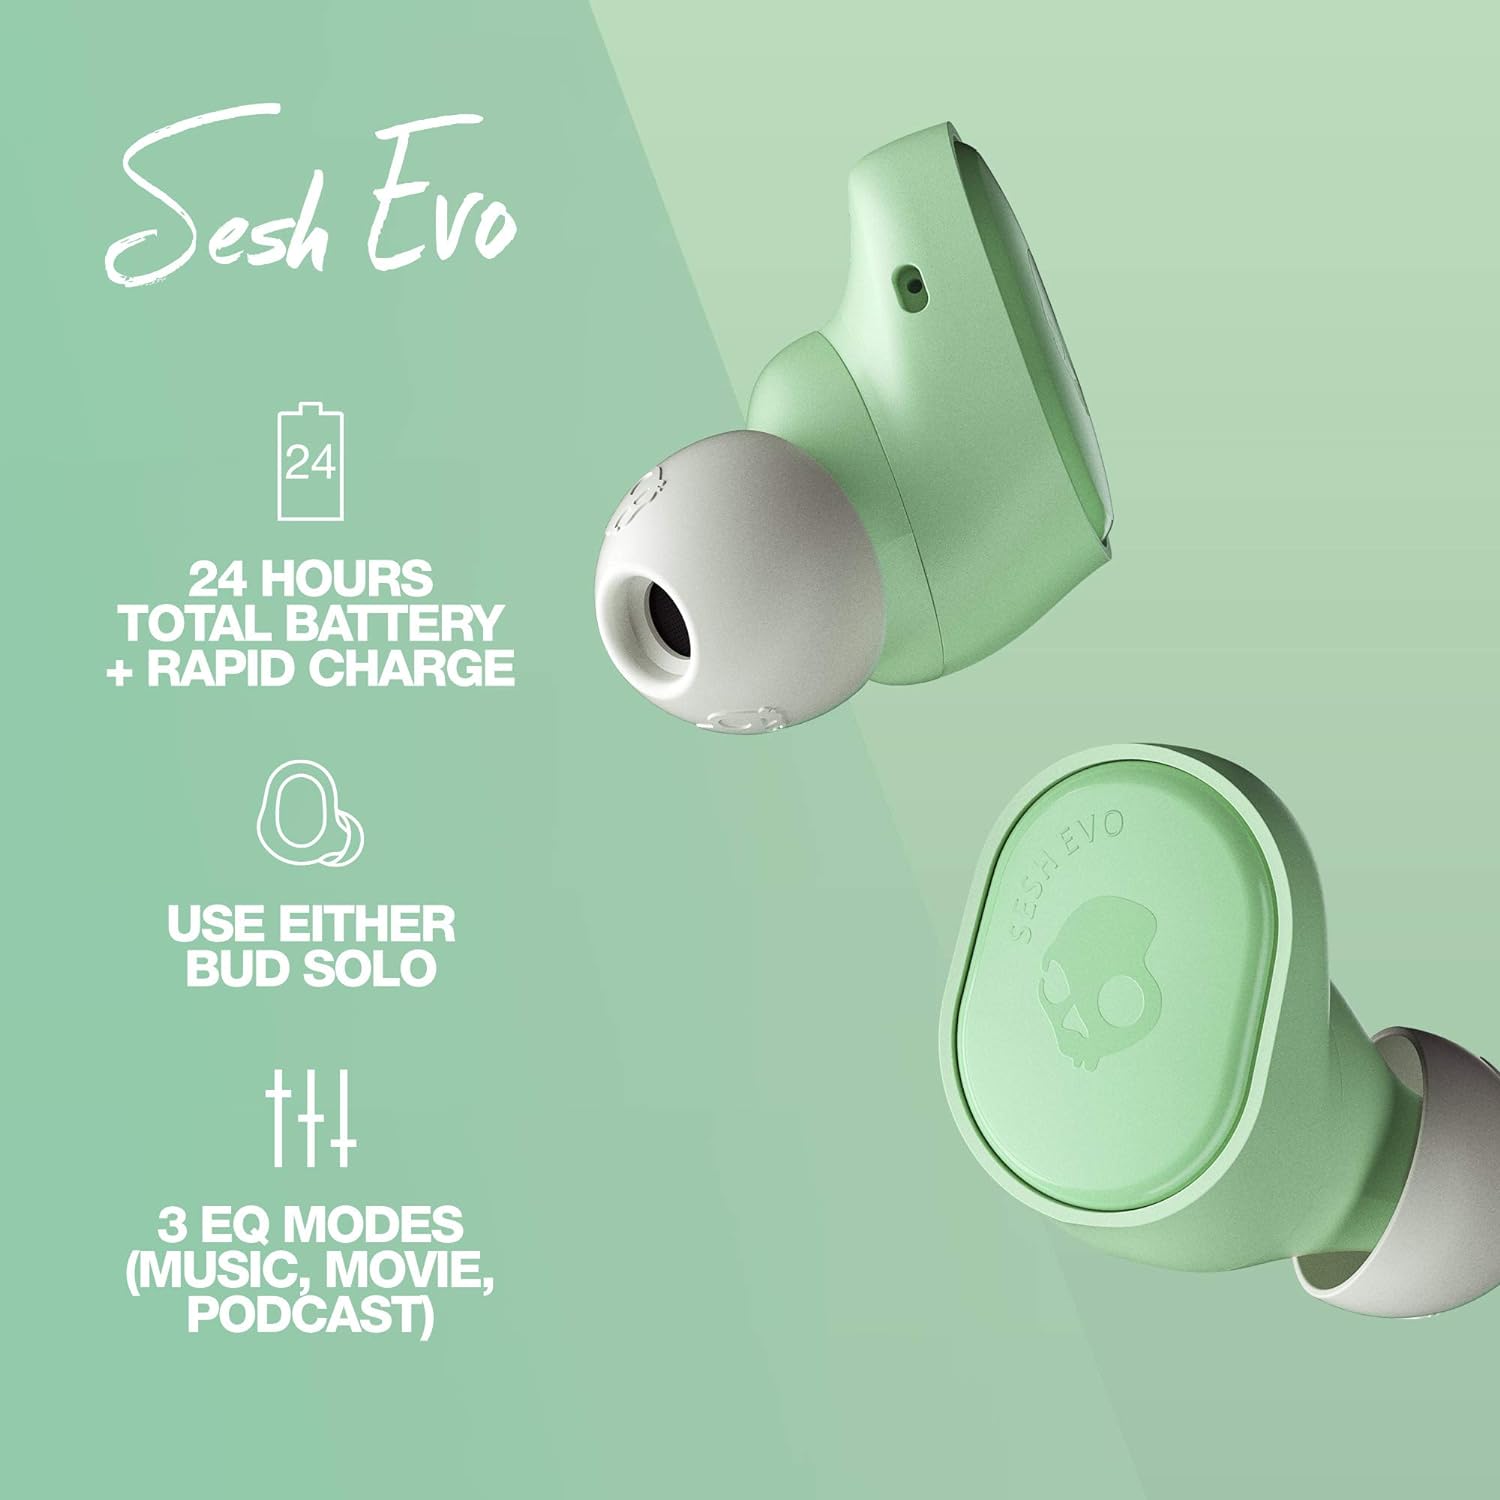 Synopsis: Skullcandy Sesh Evo In-Ear Wireless Earbuds - Mint